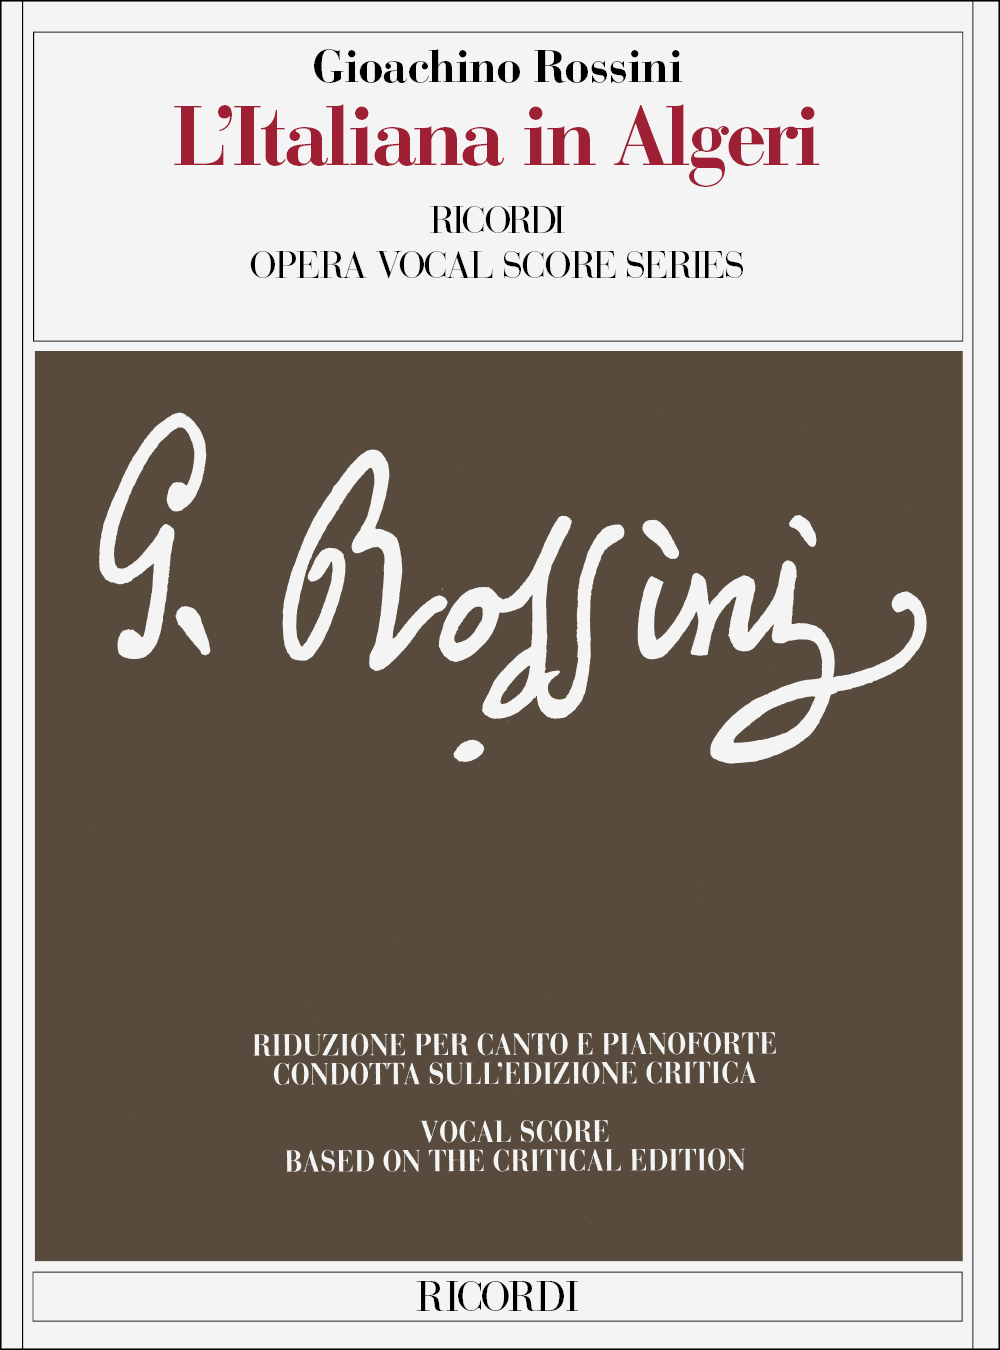 Gioachino Rossini: L'Italiana In Algeri - Vocal Score: Opera: Vocal Score